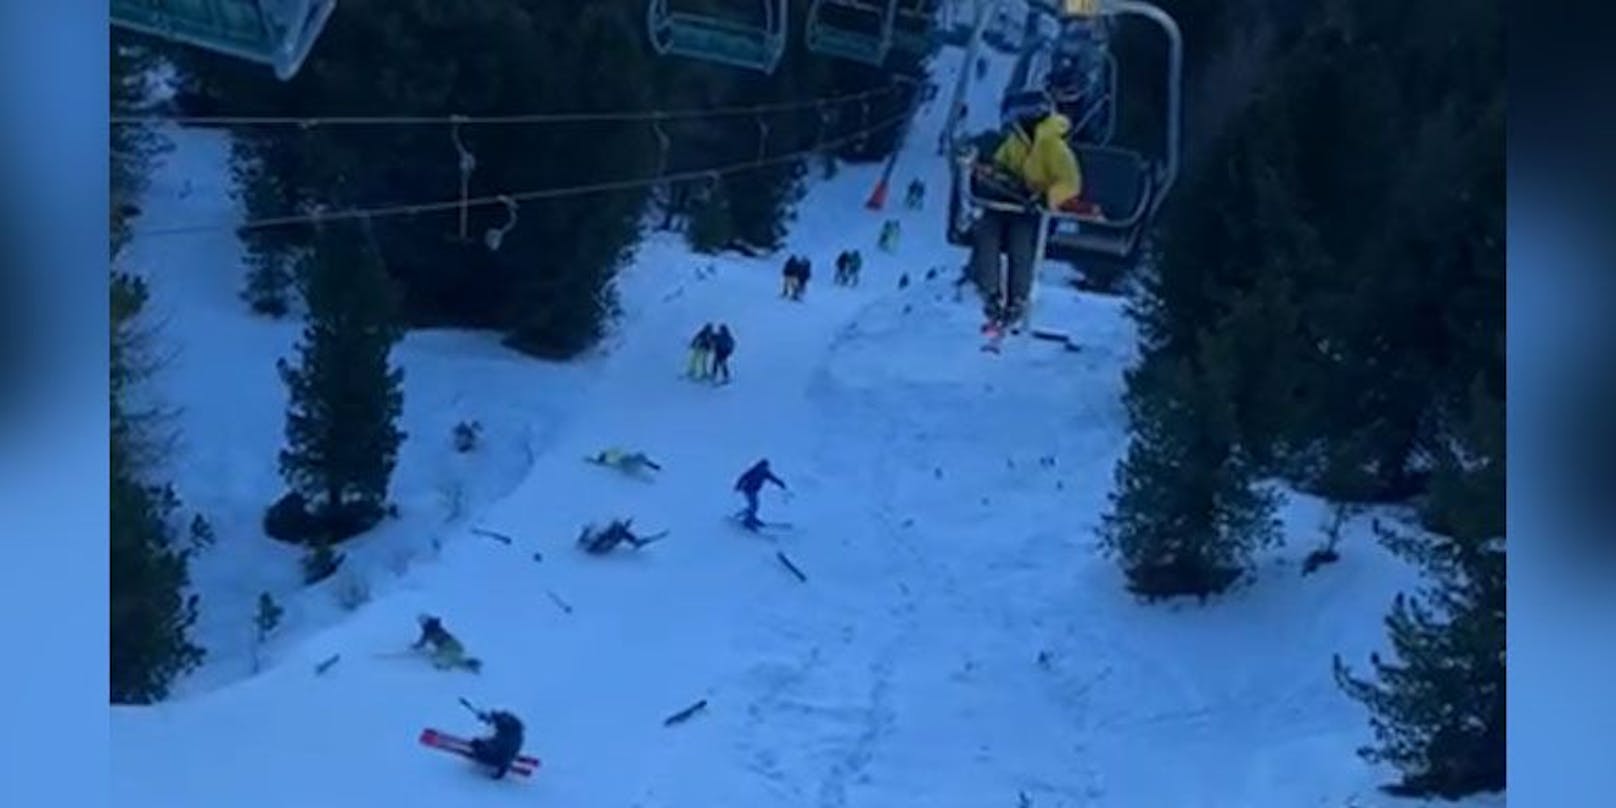 Snowboard-Rambo mäht alle um und lässt Verletzte liegen